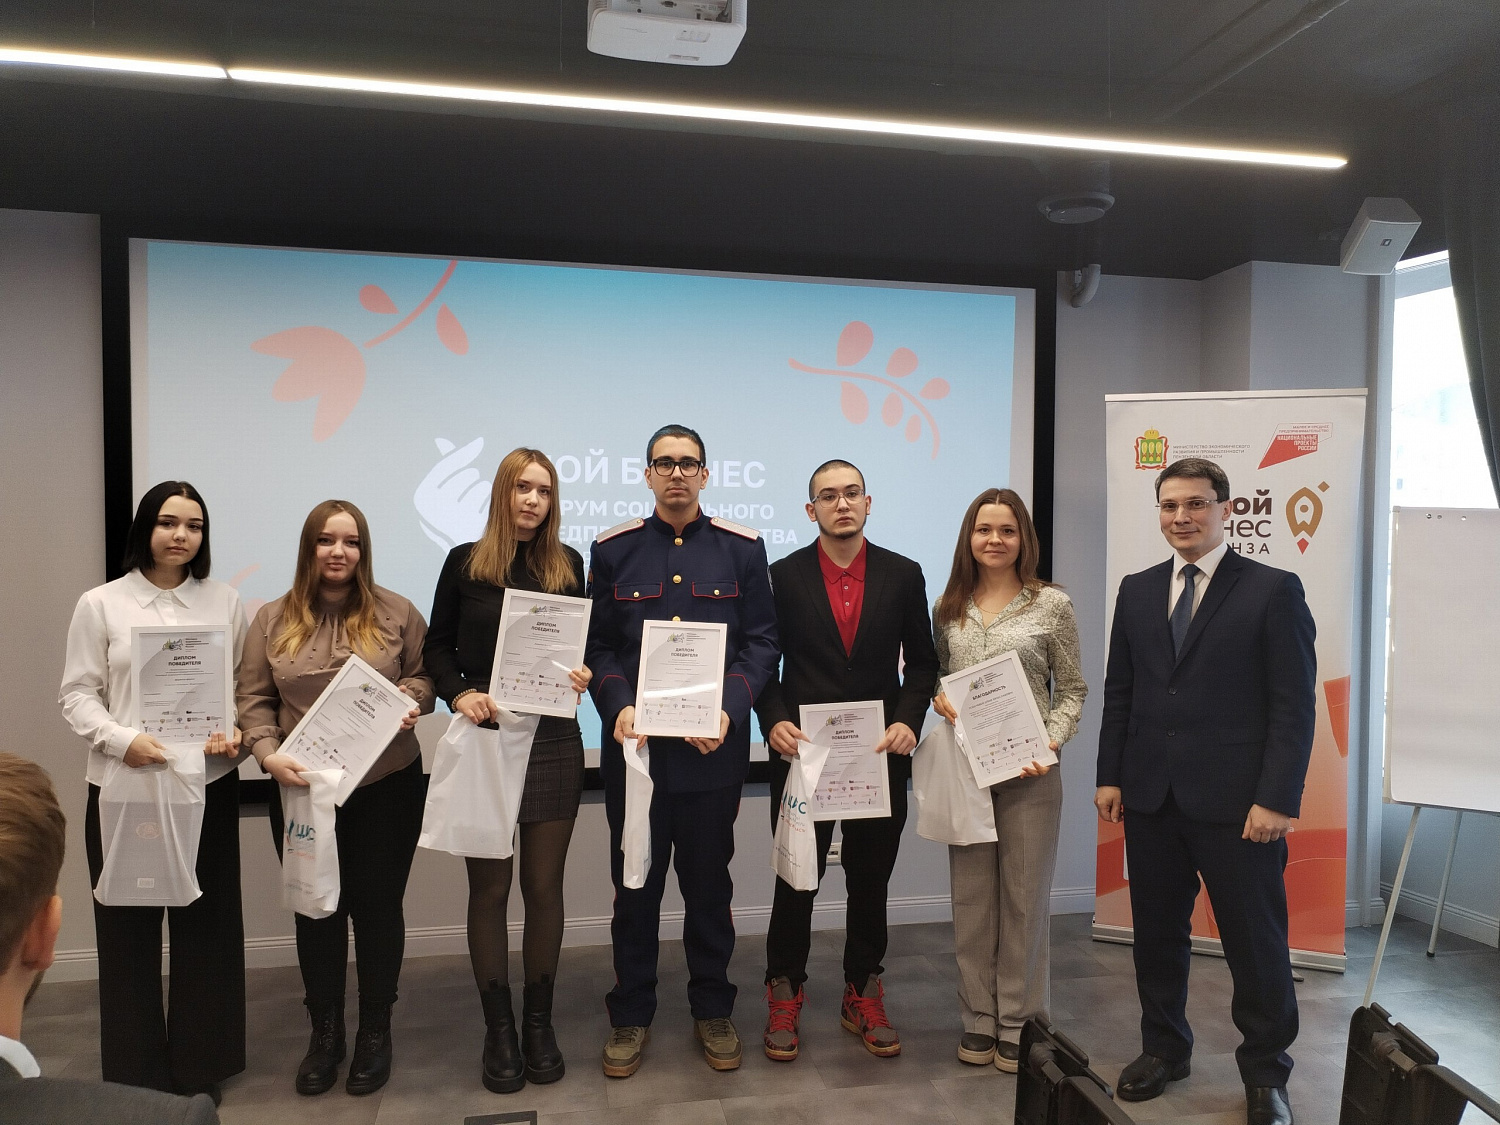 Пензенских финалистов и победителей Конкурса наградили в рамках Форума «Мой бизнес. Форум социального предпринимательства»